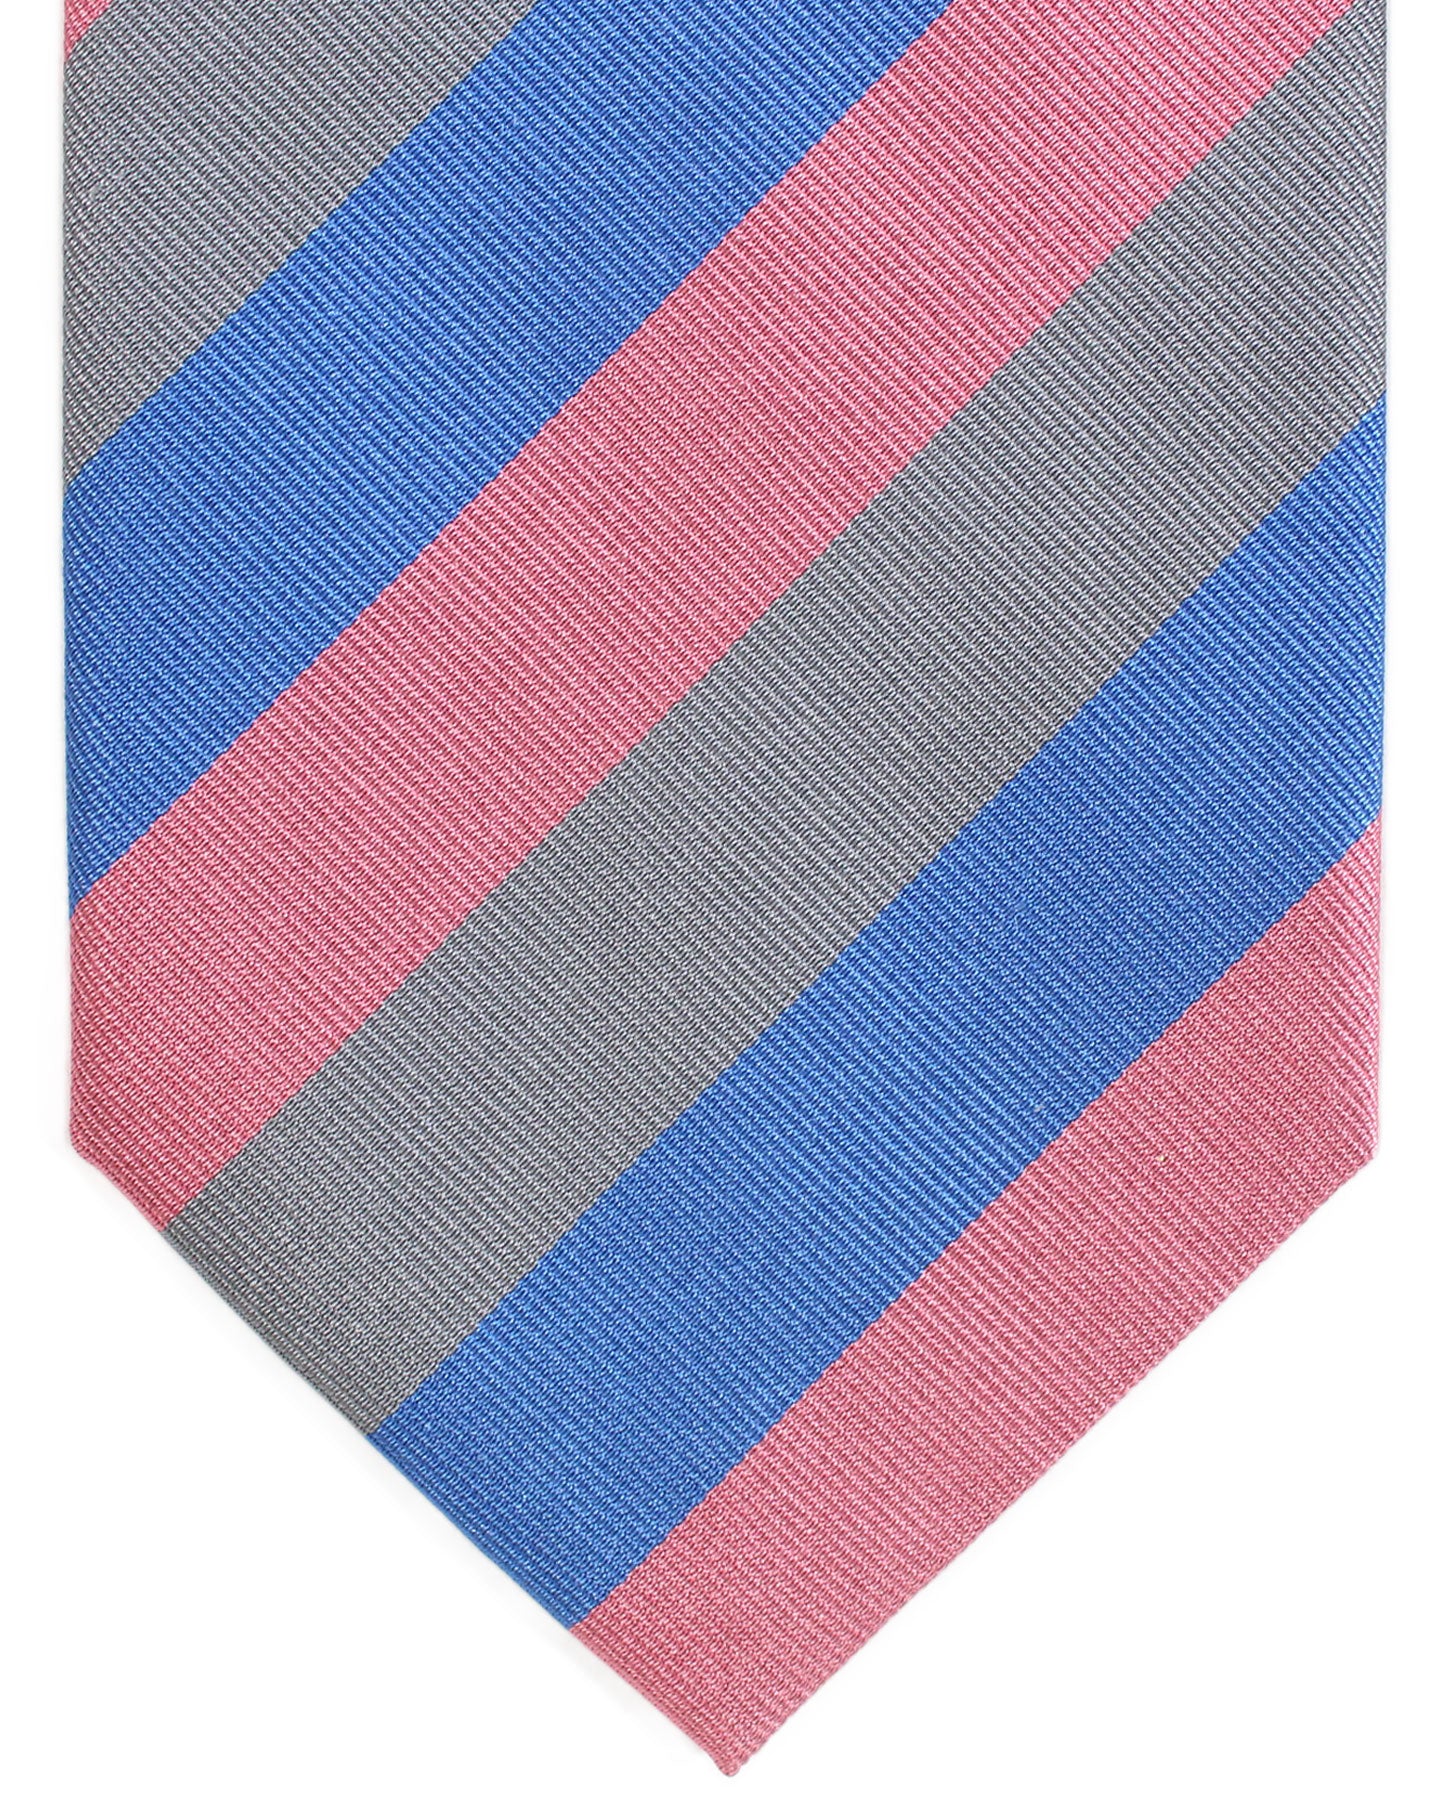 E. Marinella Tie Pink Blue Gray Stripes Design